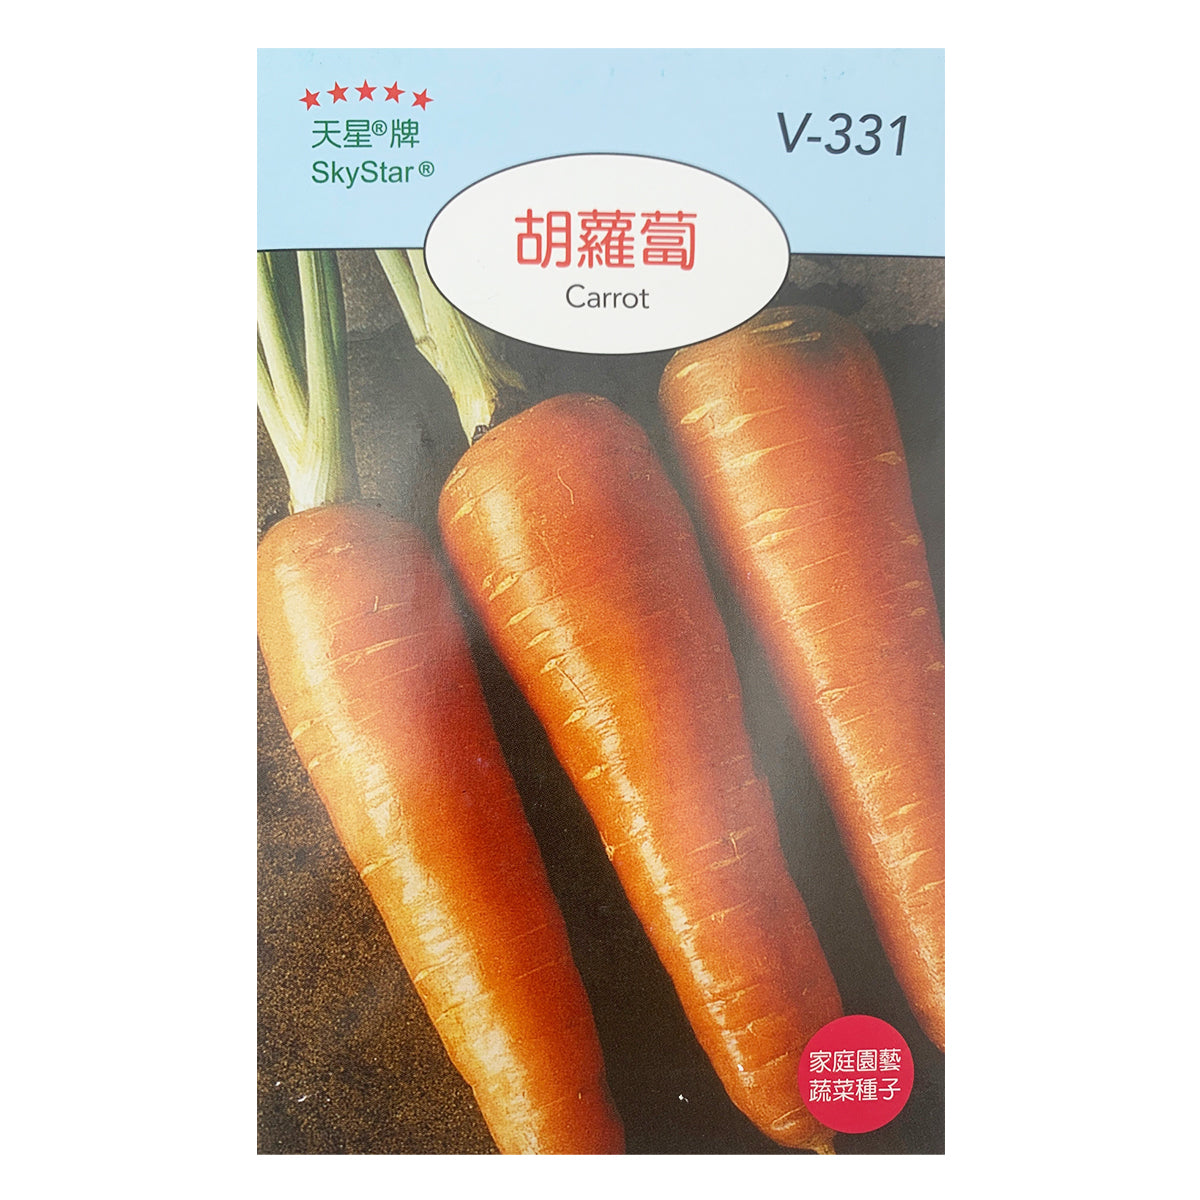 台灣天星牌園藝蔬果種子 - 胡蘿蔔